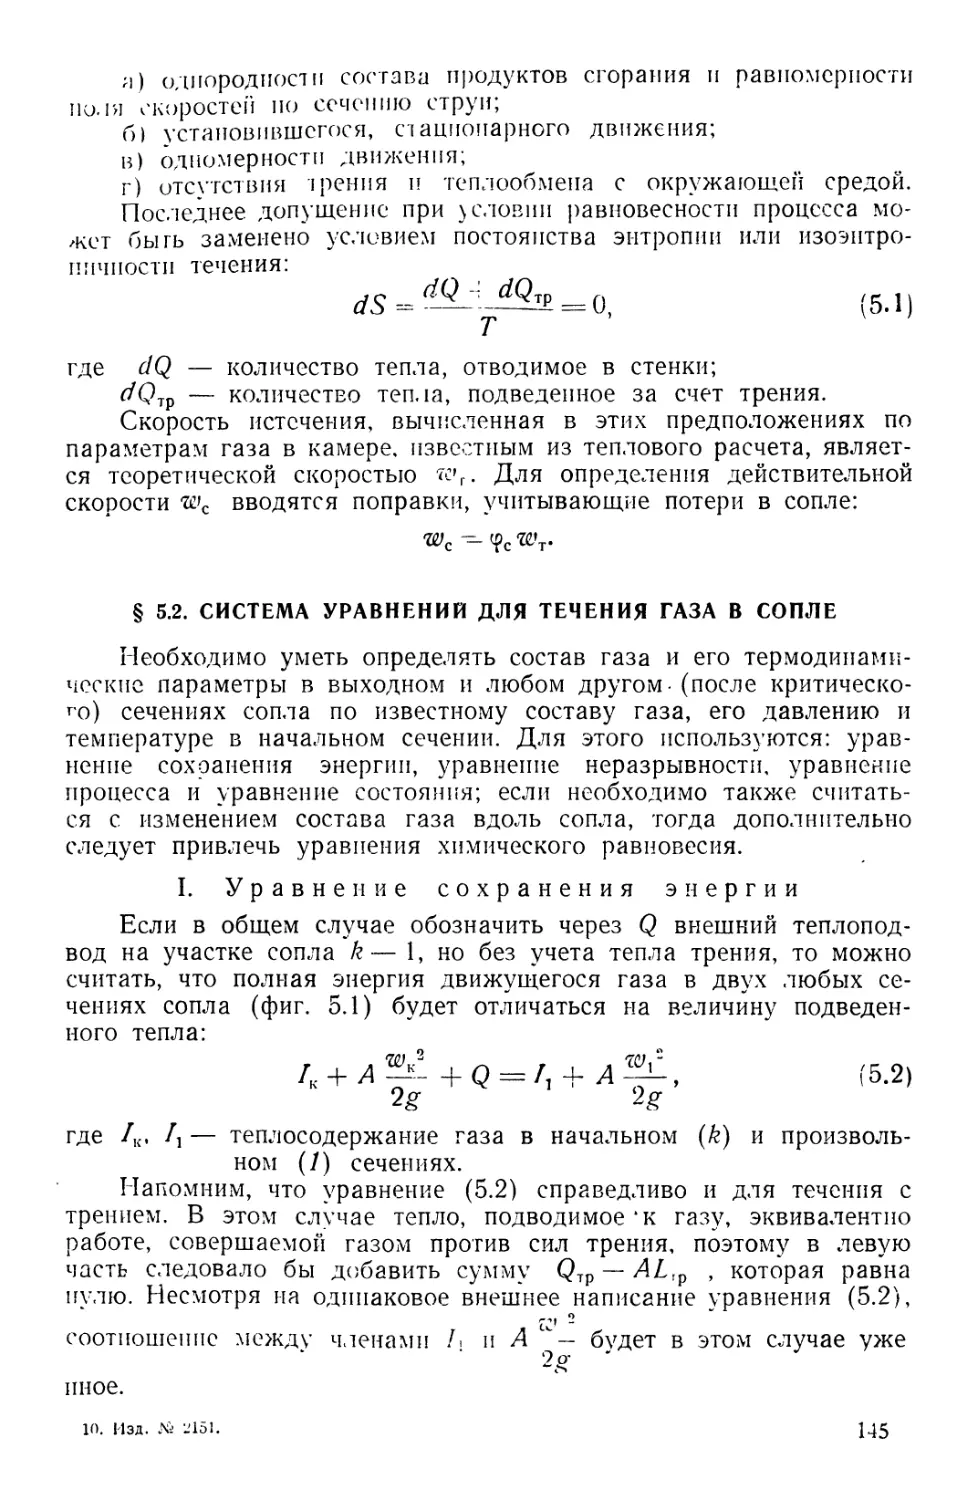 § 5.2. Система уравнений для течения газа в сопле